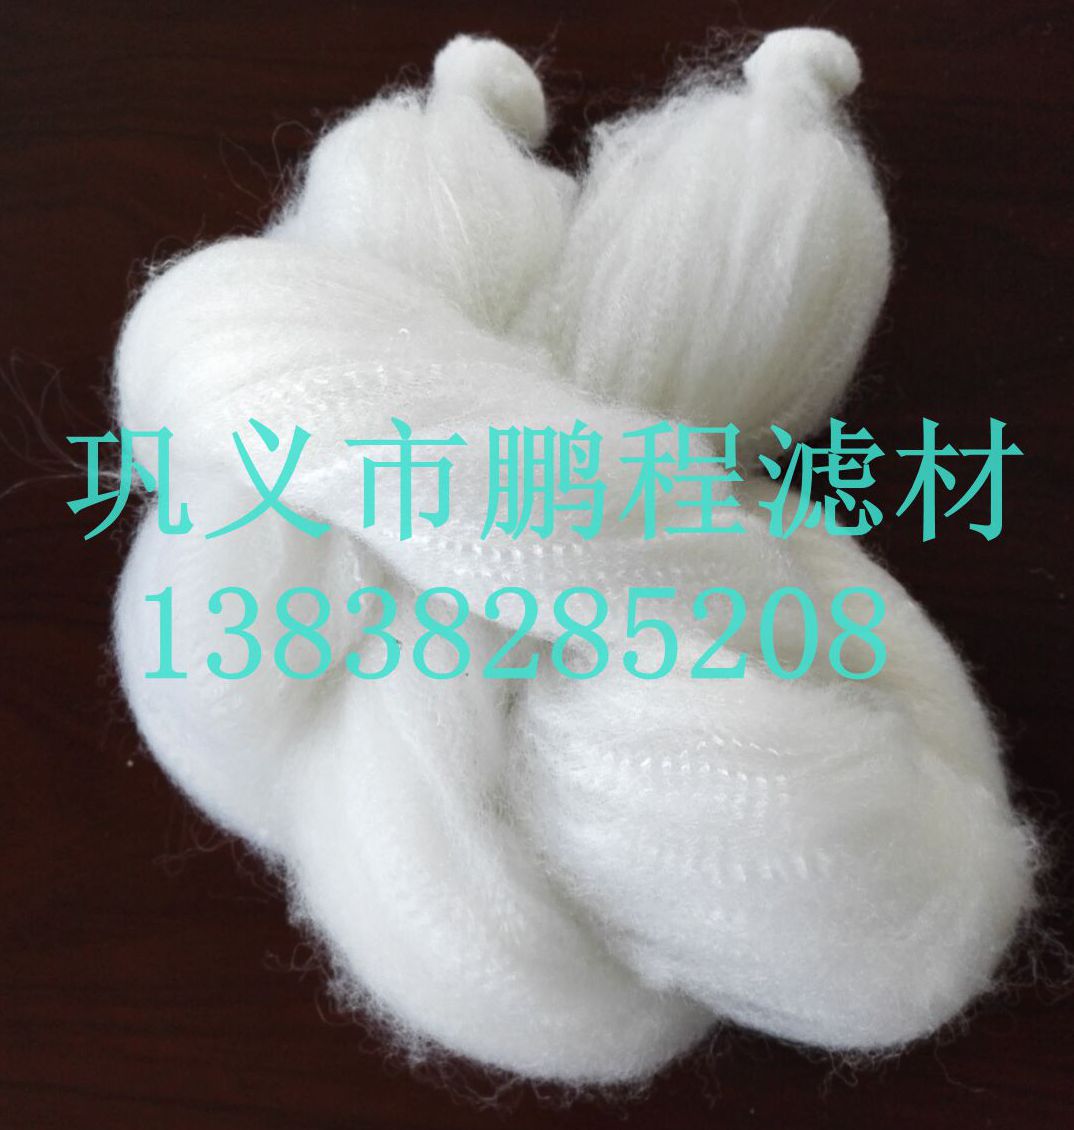 郑州市纤维束滤料厂家纤维束/纤维束滤料/改性纤维束/纤维束厂家价格